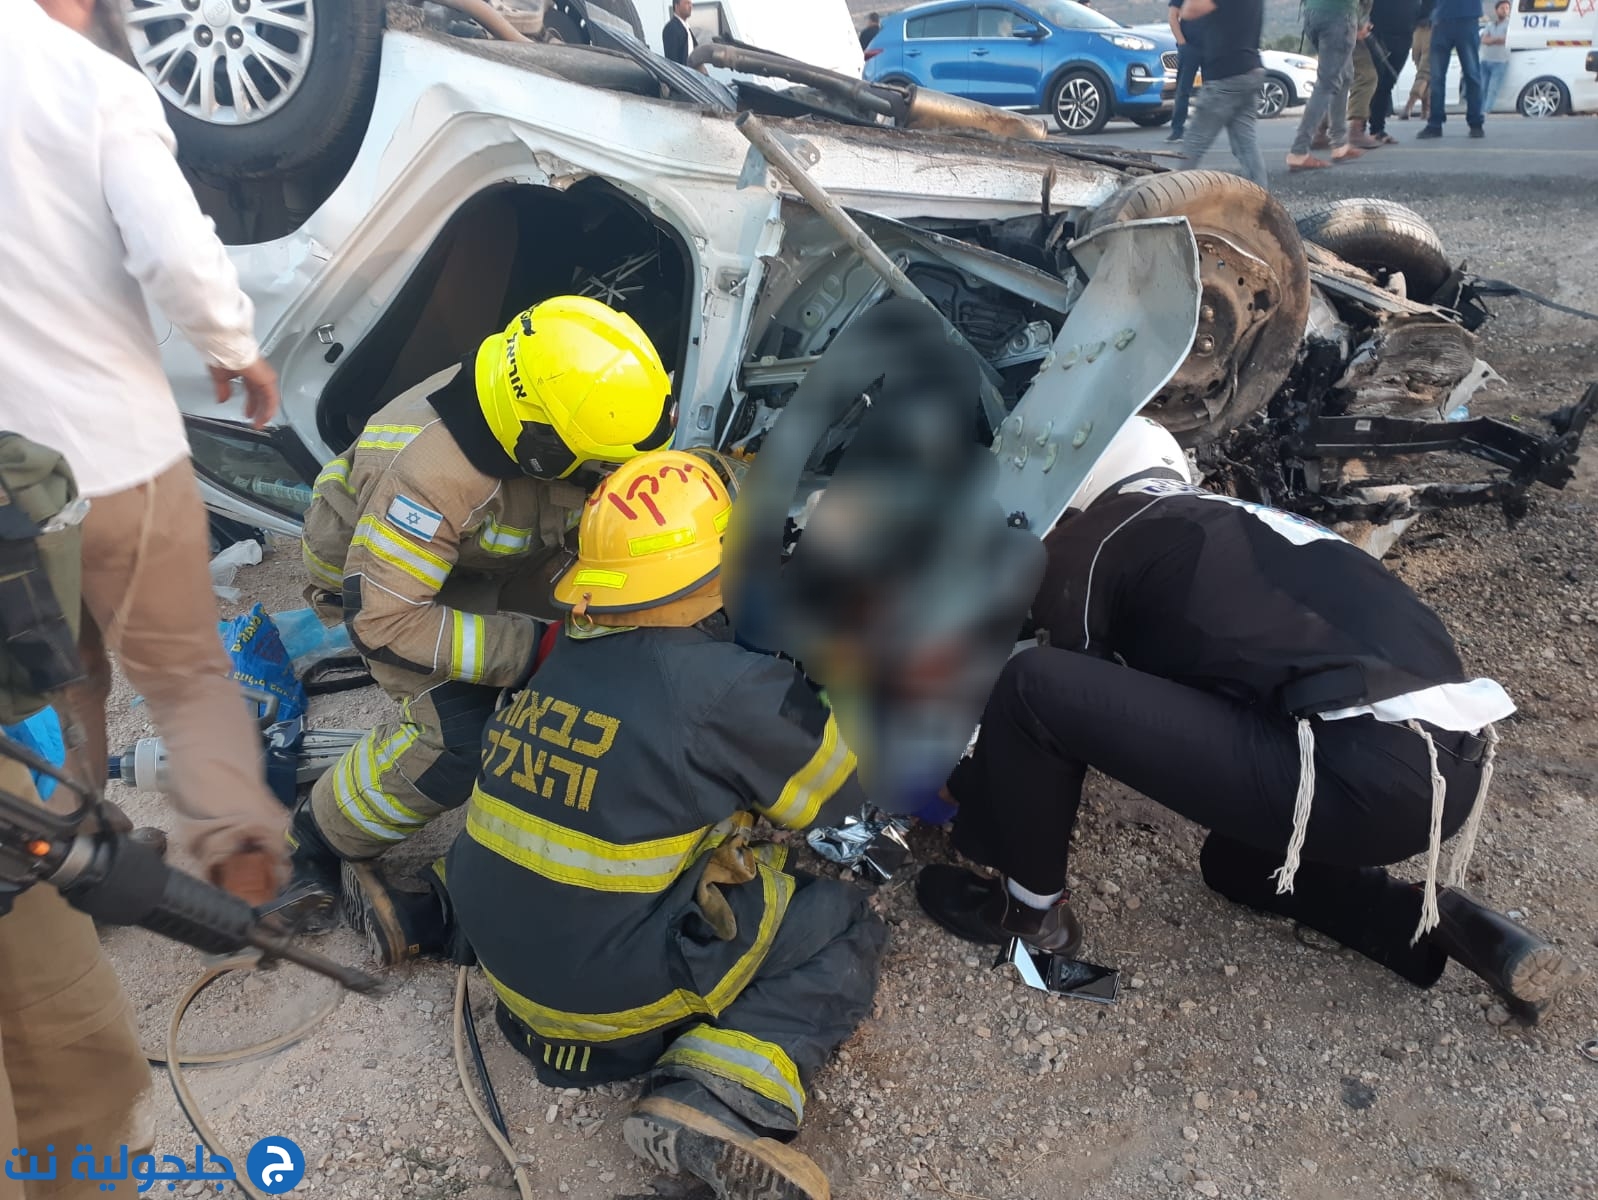 مصرع ثلاثة شبان فلسطينيين بحادث طرق مع سيارة اسرائيلية بمنطقة نابلس